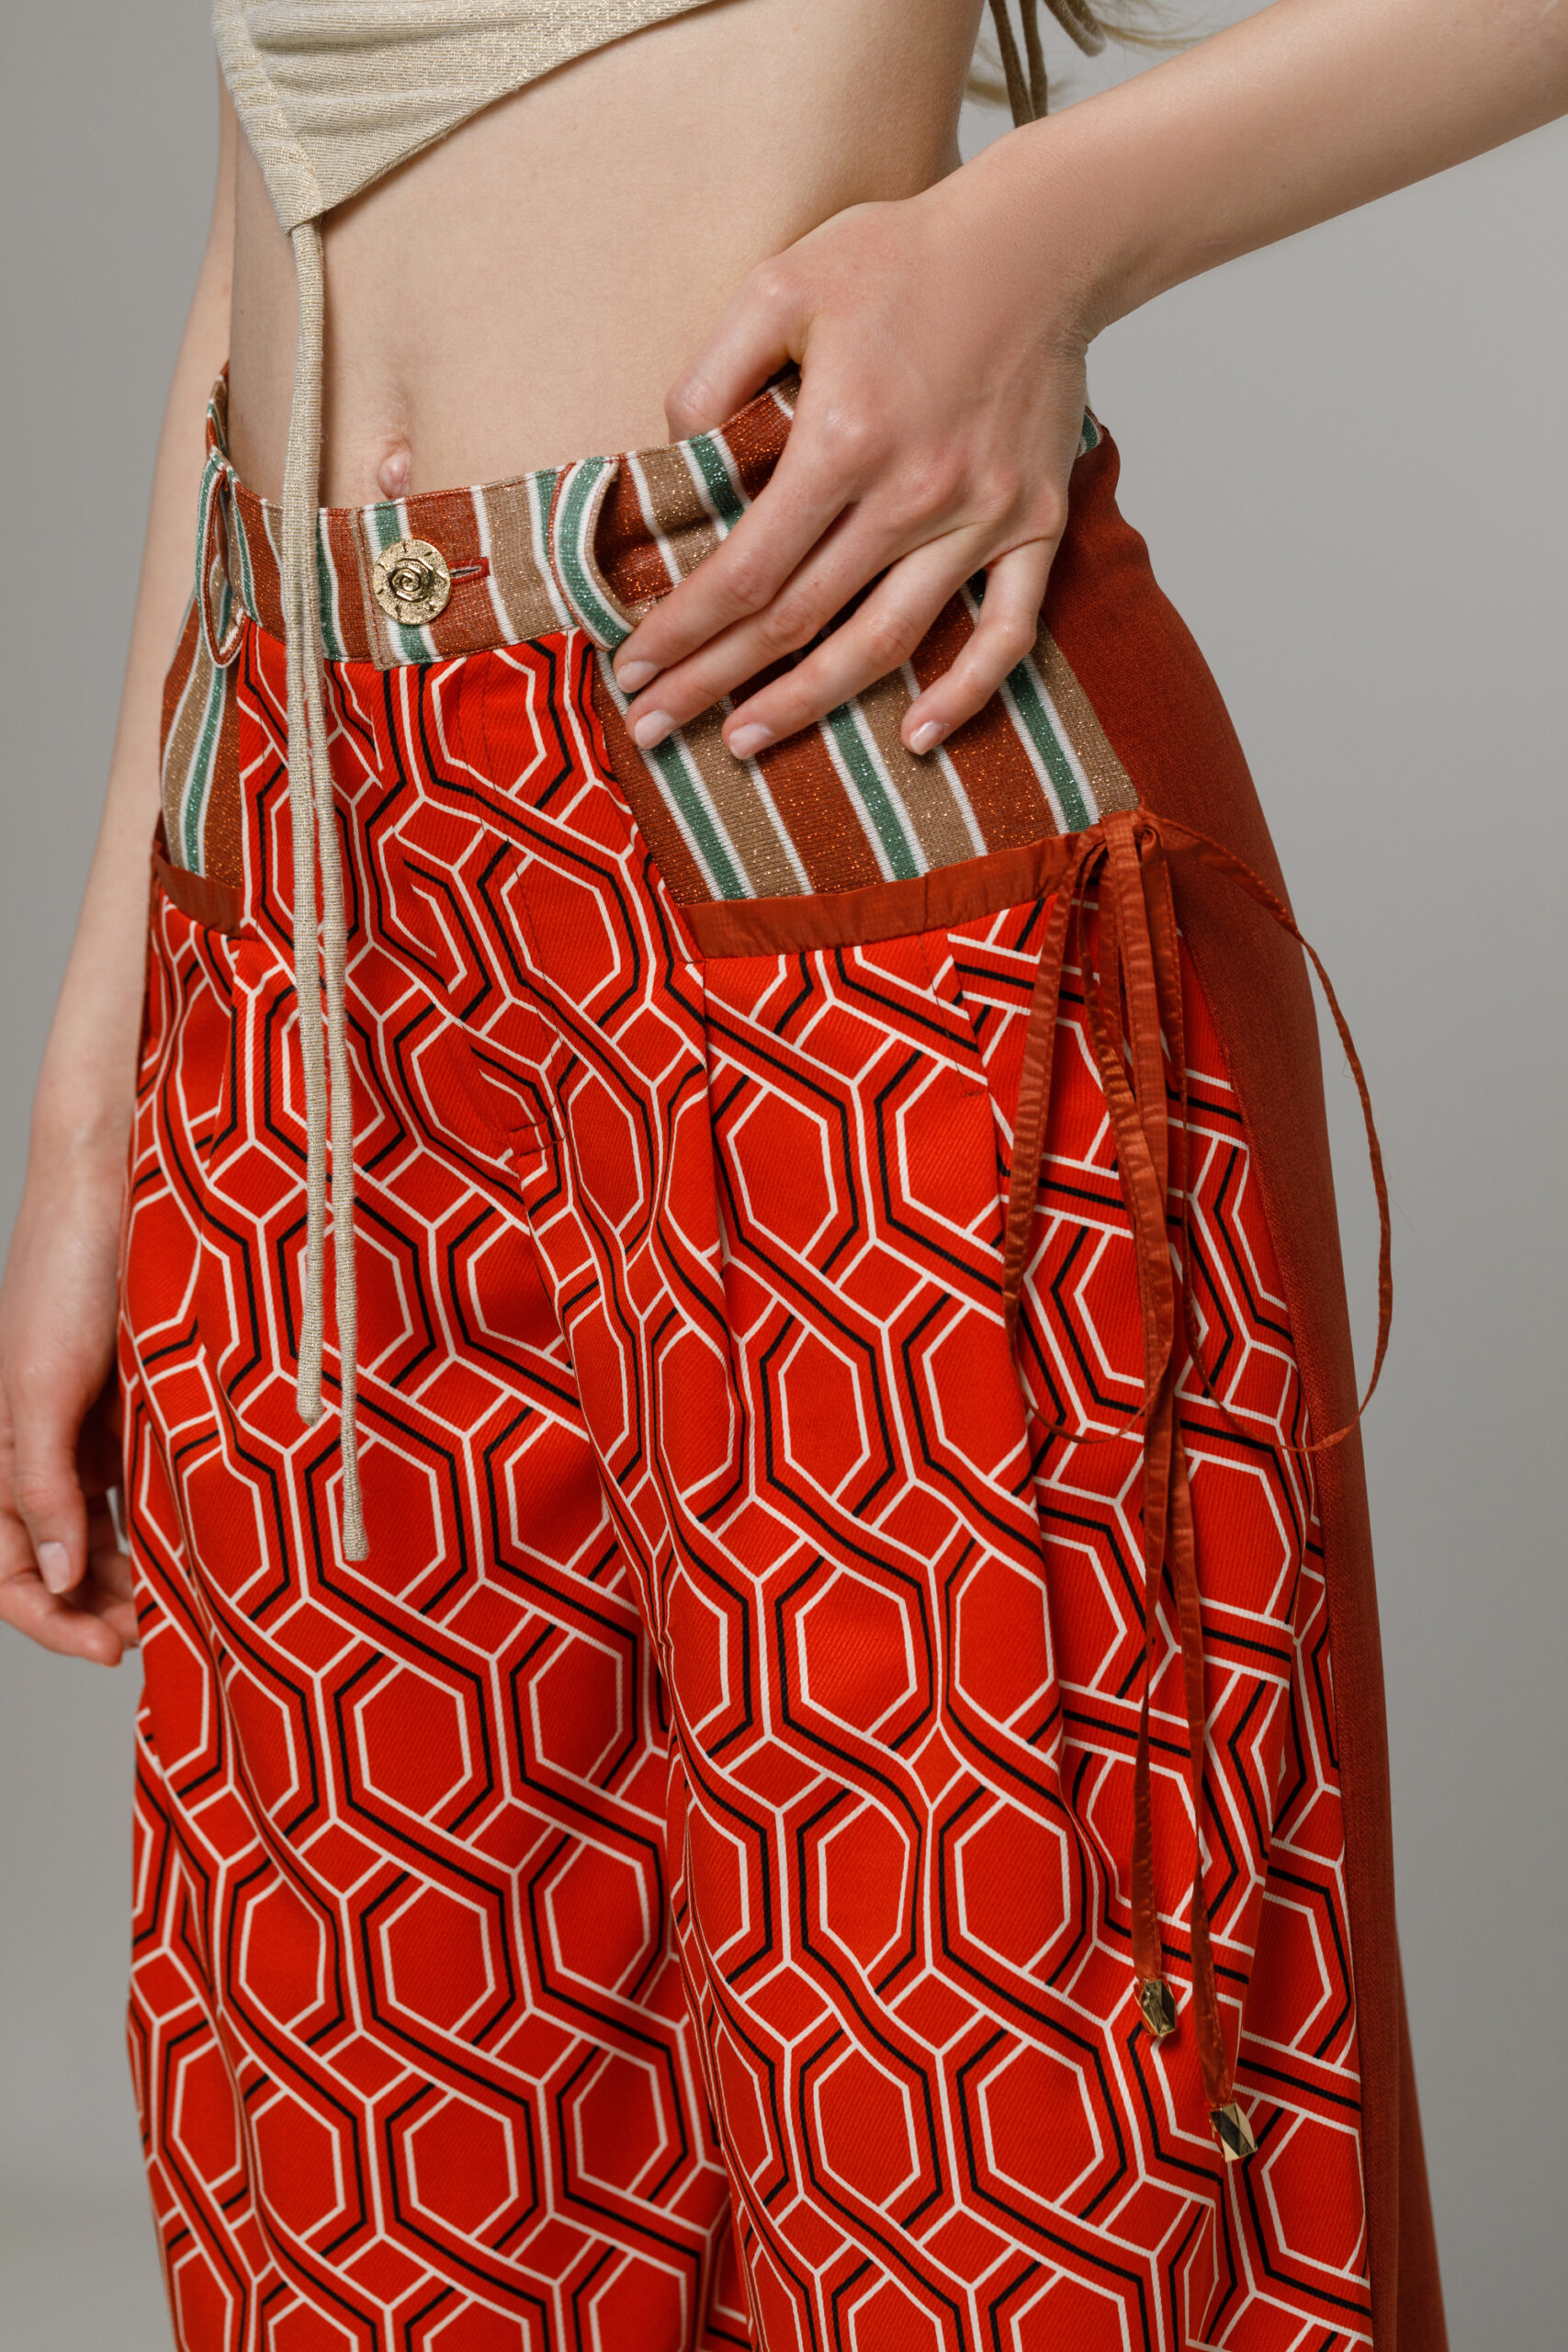 Pantalon BONNIE cu motive geometrice caramiziu. Materiale naturale, design unicat, cu broderie si aplicatii handmade